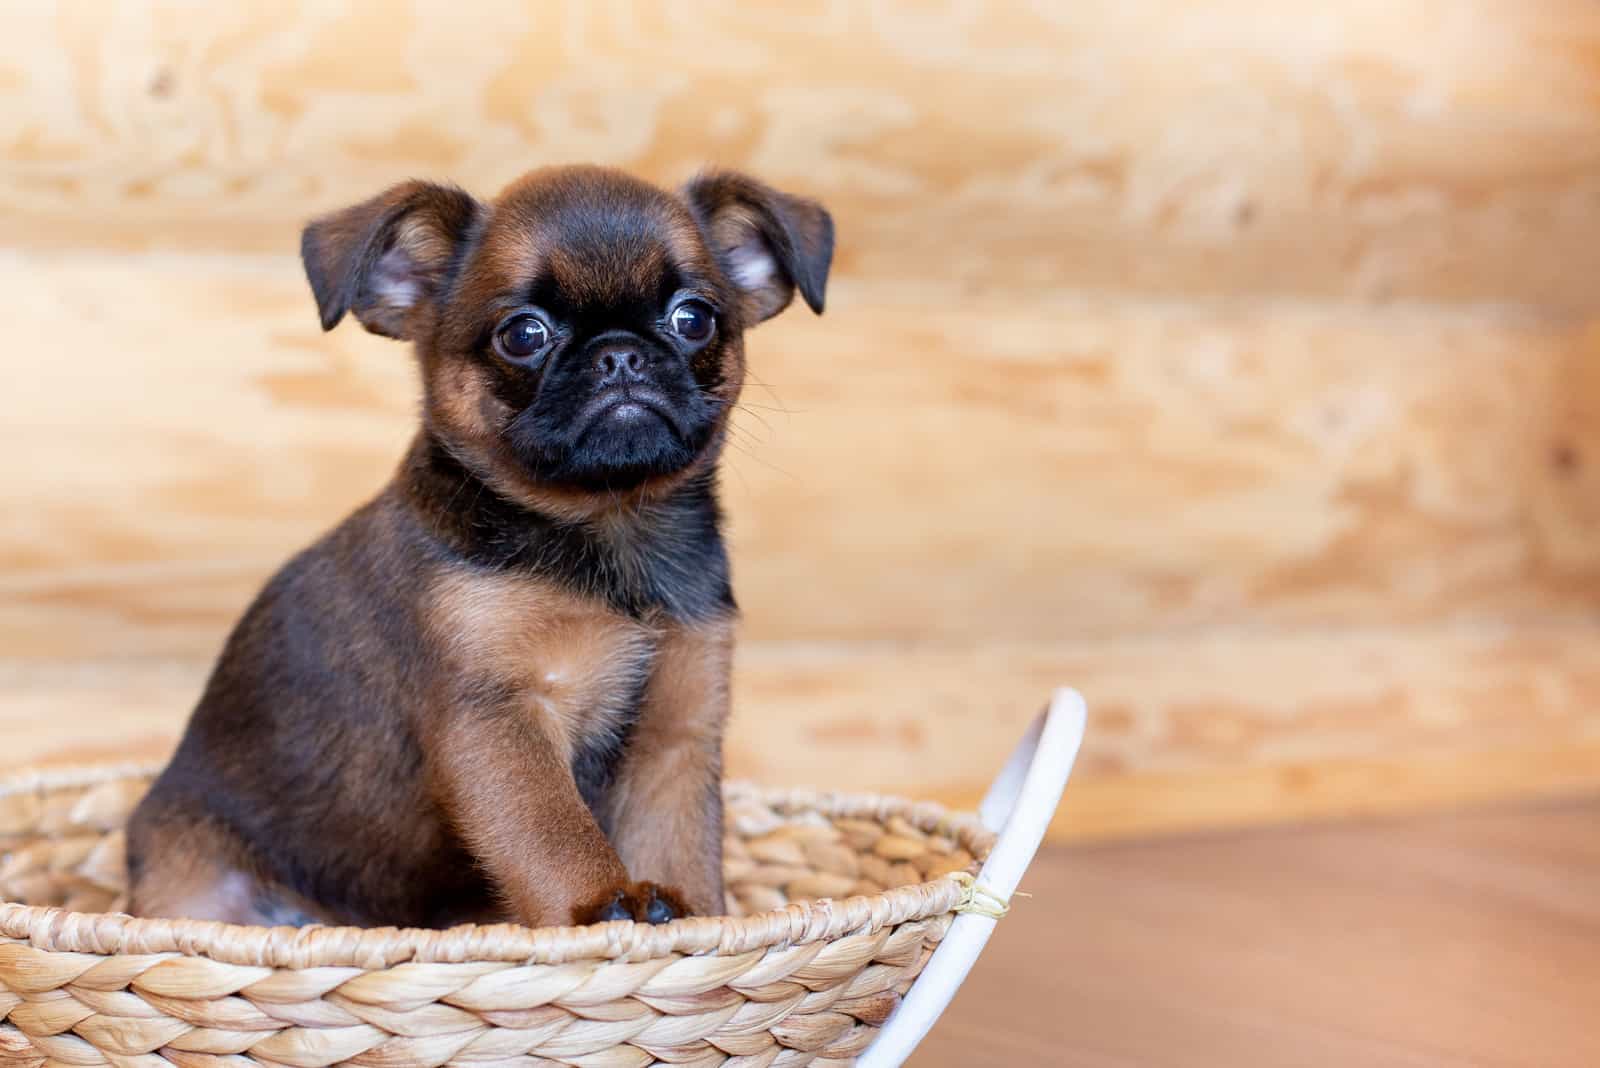 brown cute Brussels griffon puppy sitting in a wicker basket